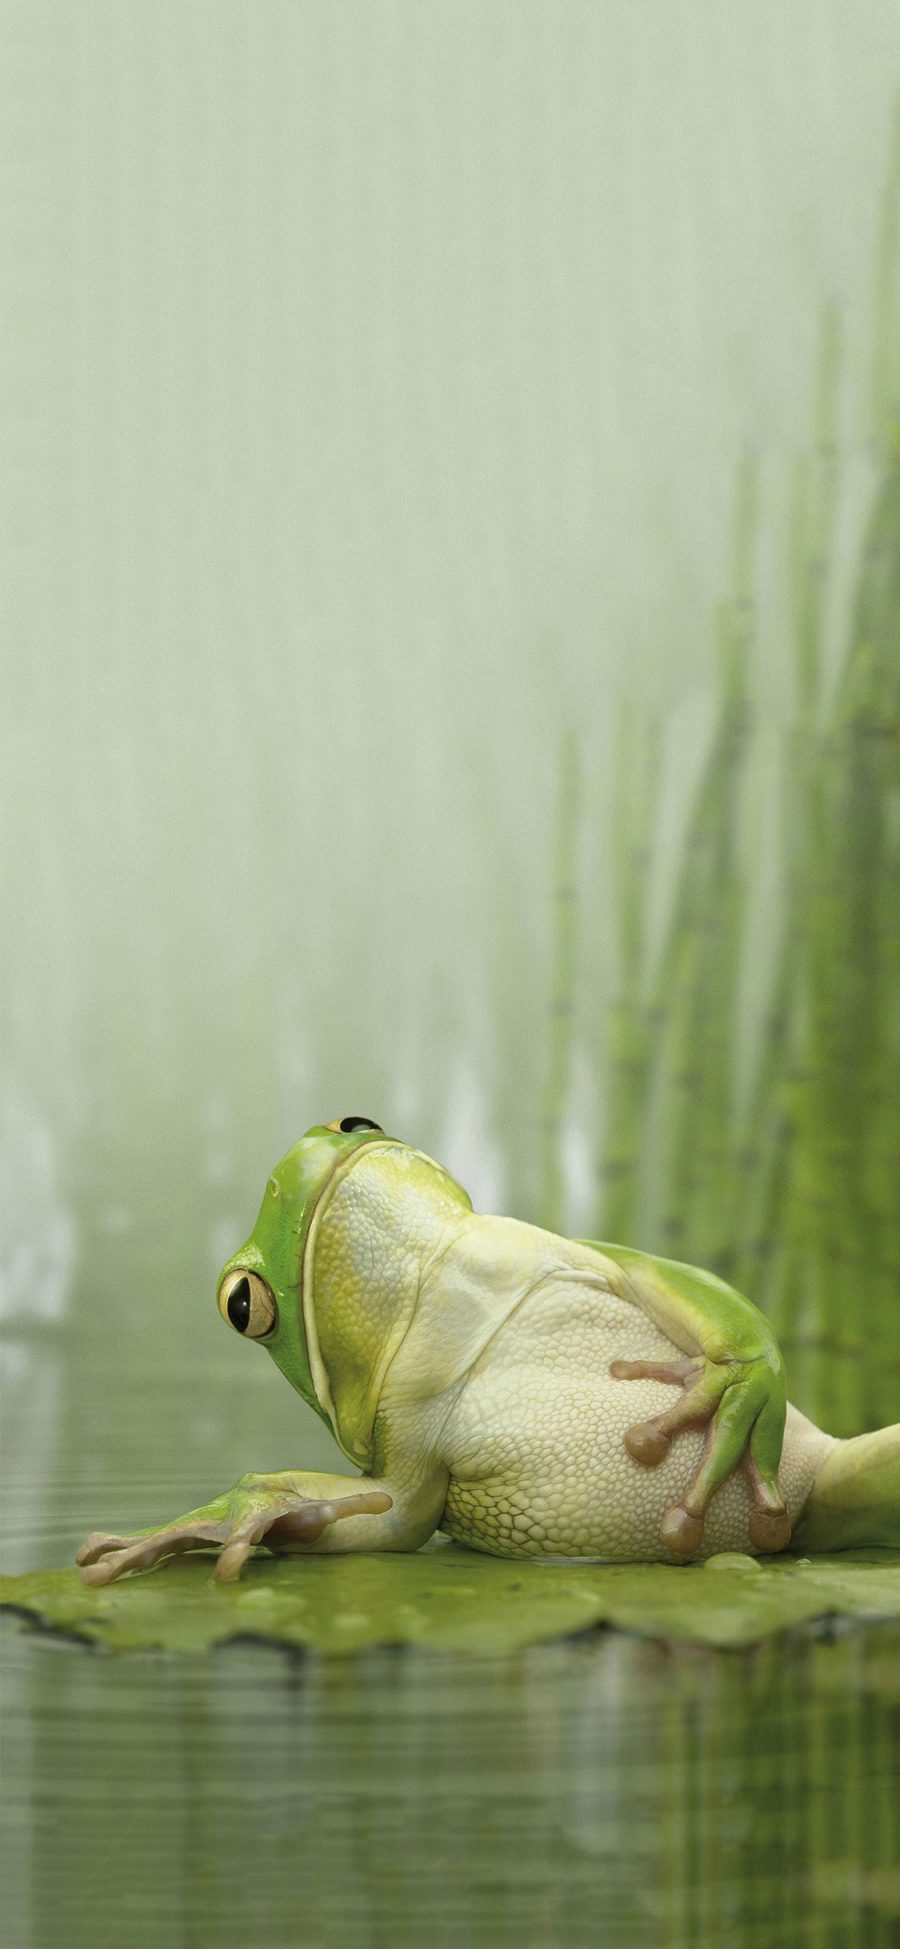 [2436×1125]青蛙 荷叶 绿豆蛙 休息 苹果手机壁纸图片